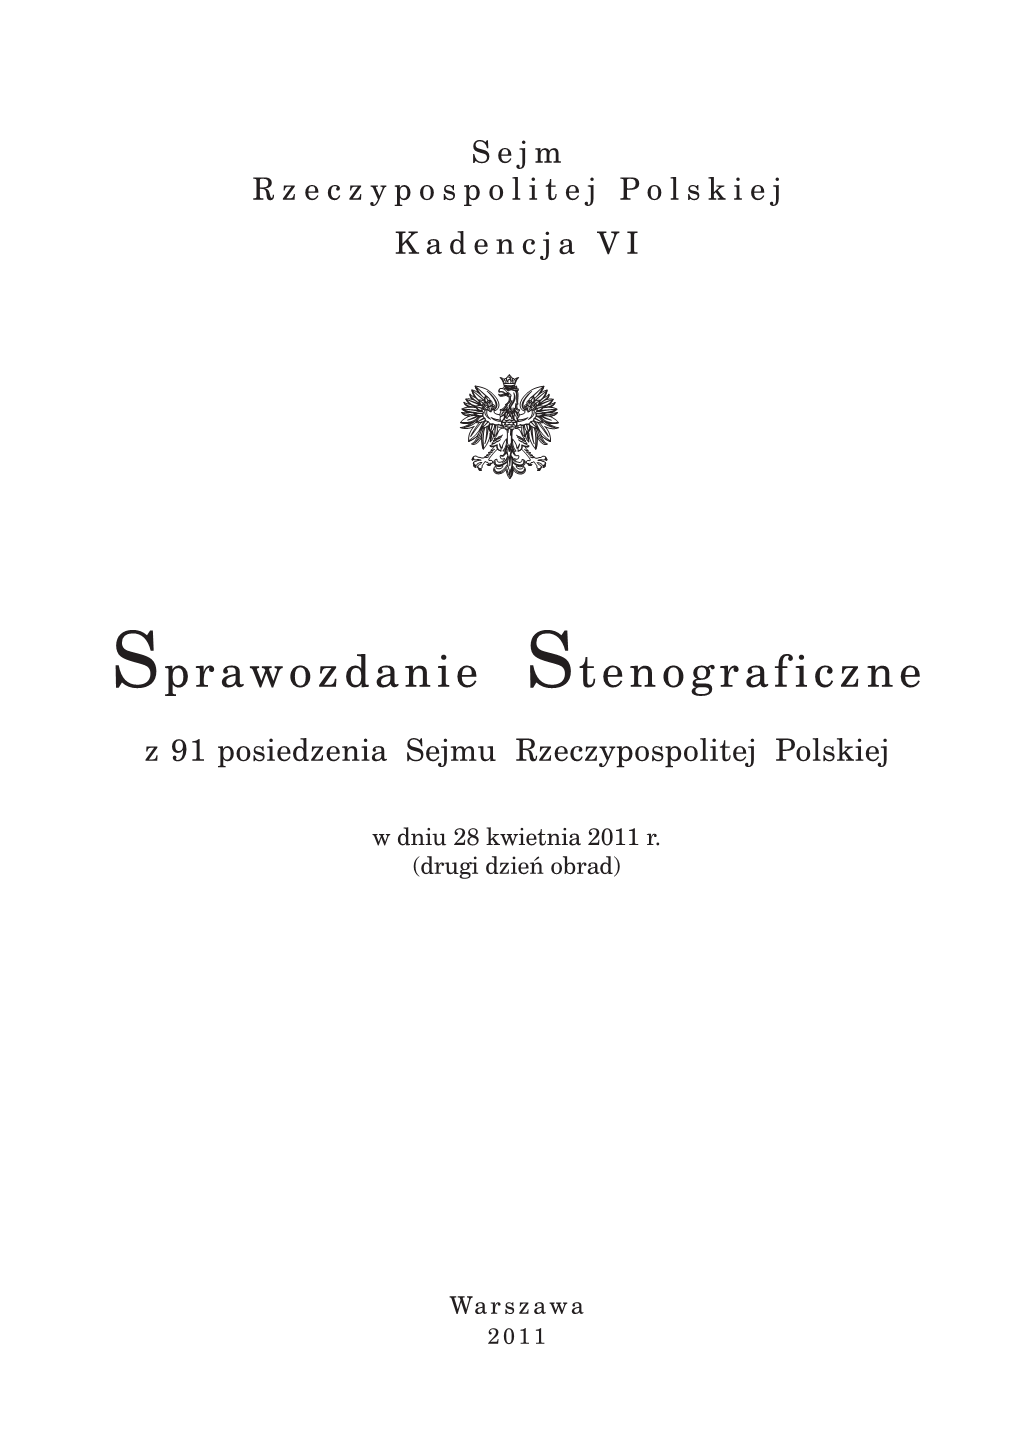 Sprawozdanie Stenograficzne Z 91 Posiedzenia Sejmu Rzeczypospolitej Polskiej